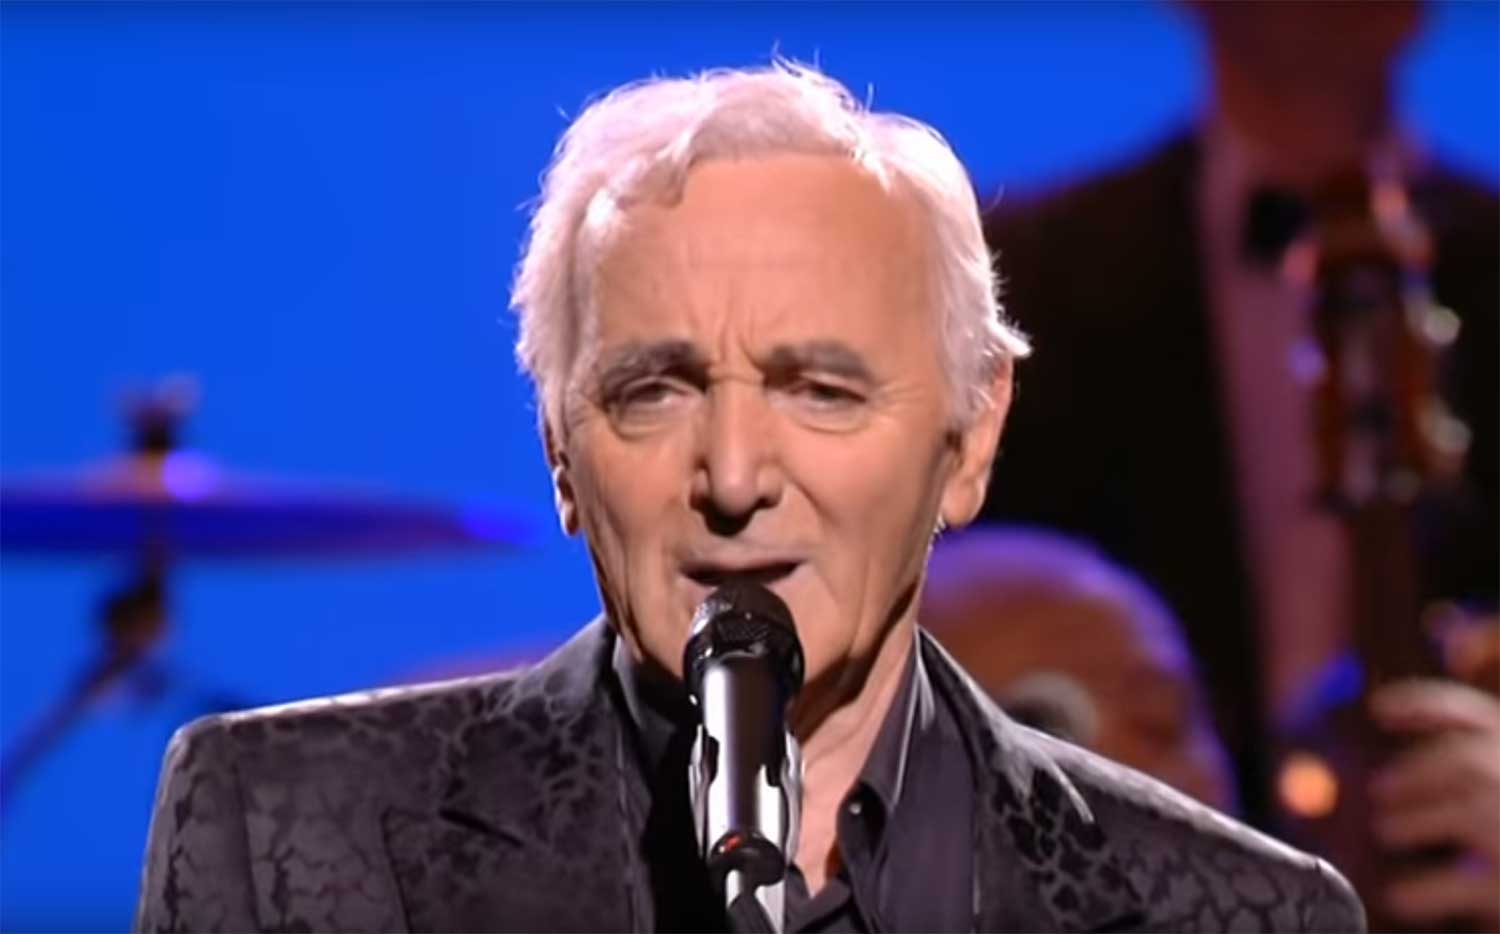 Charles-Aznavour